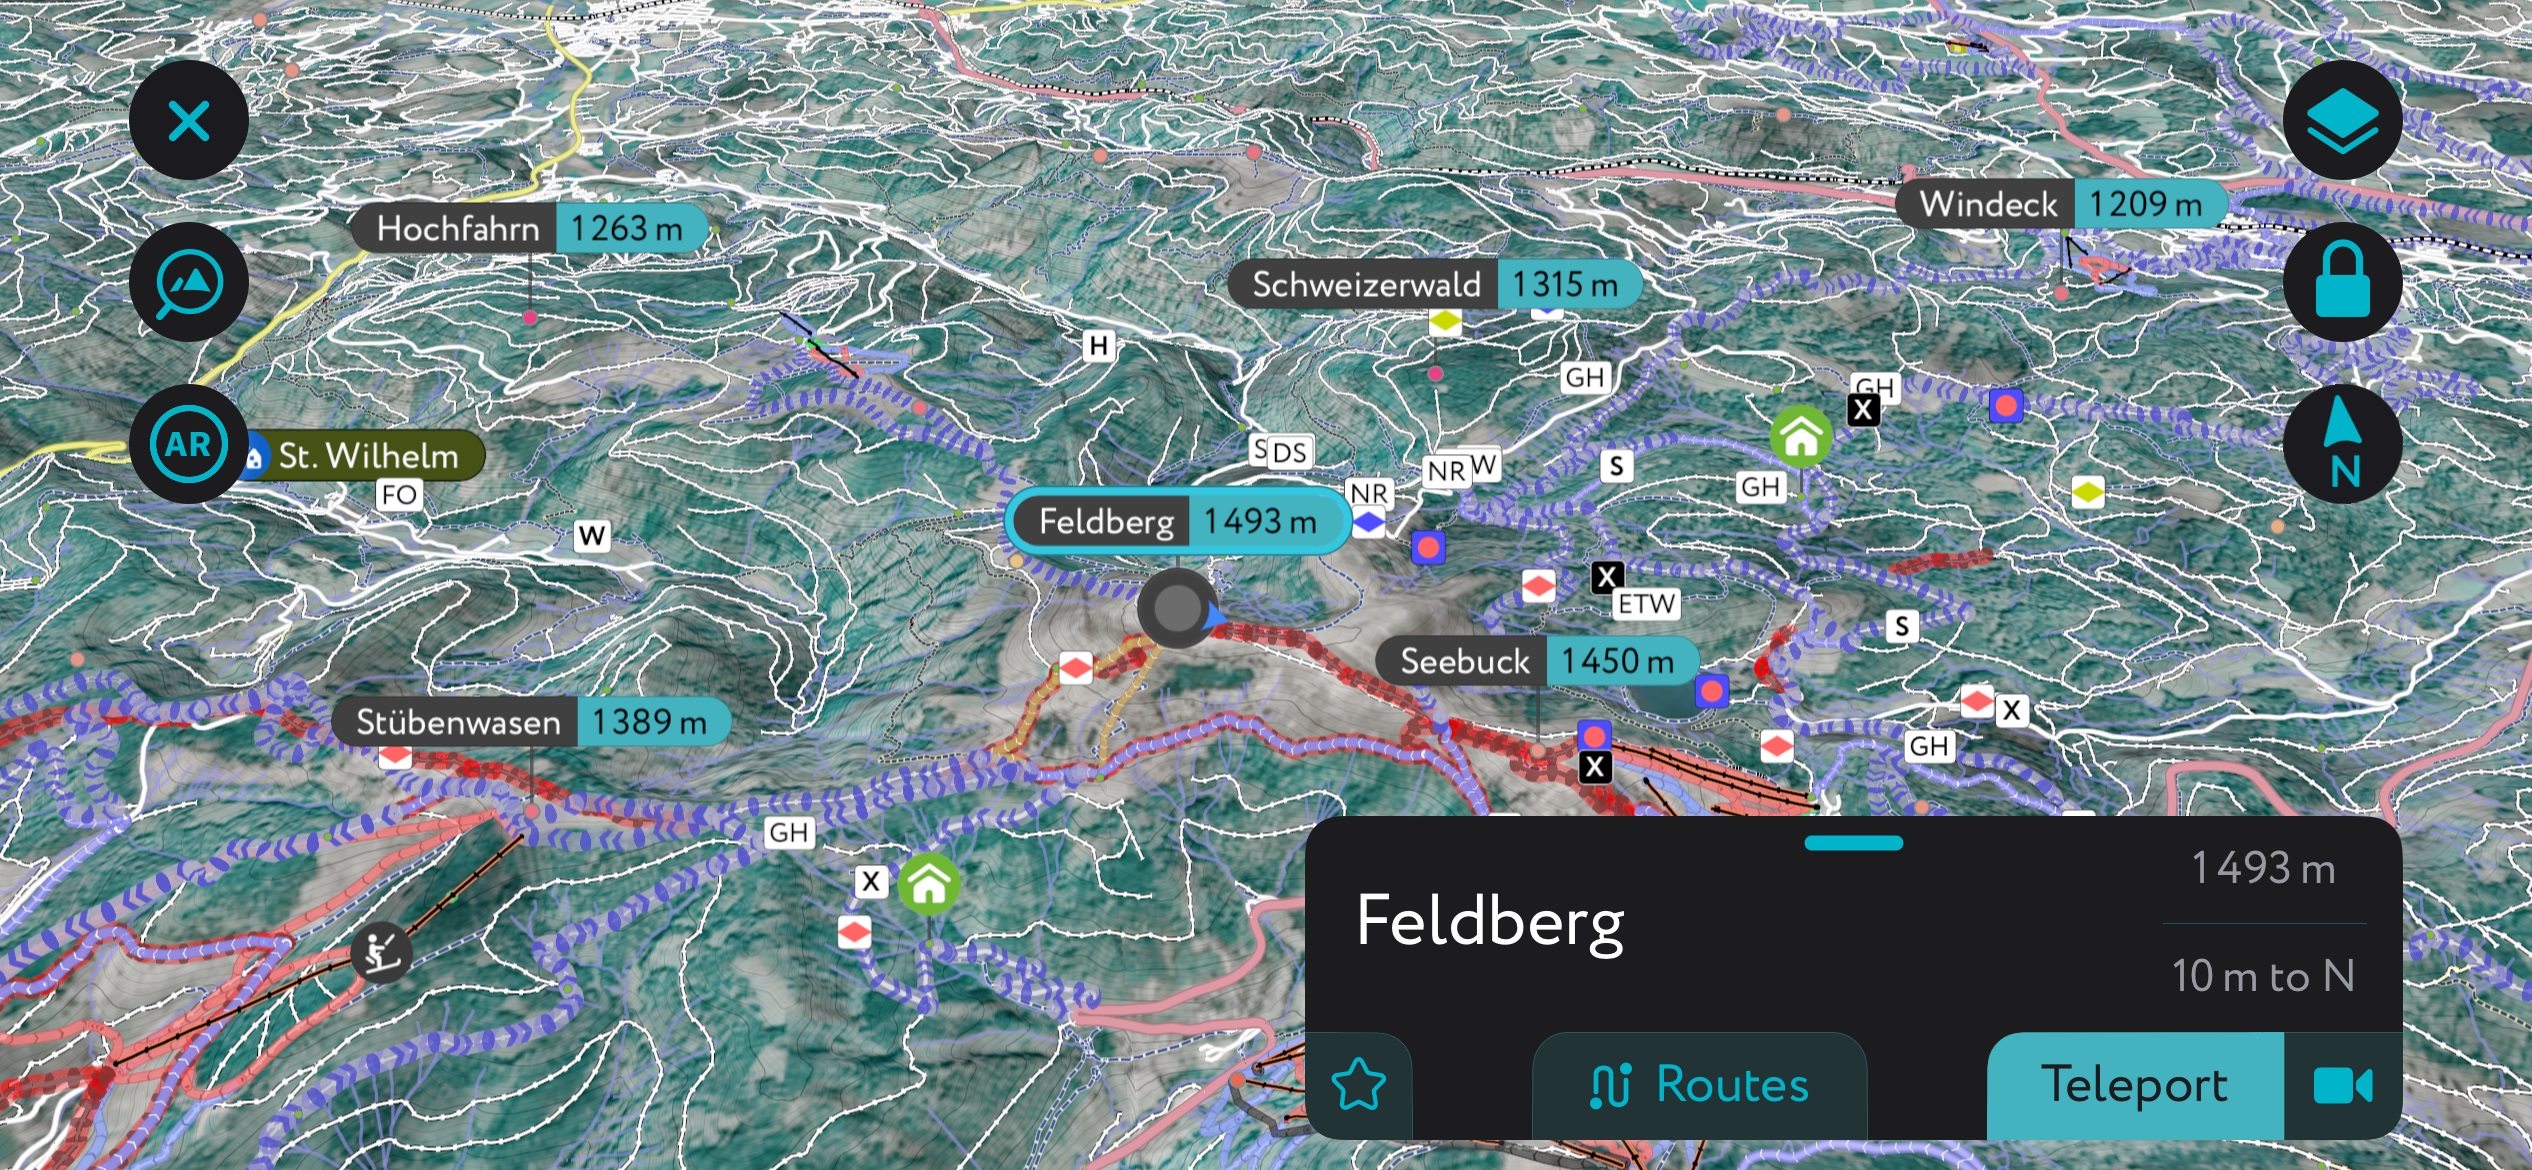 PeakVisor’s mobile app Feldberg